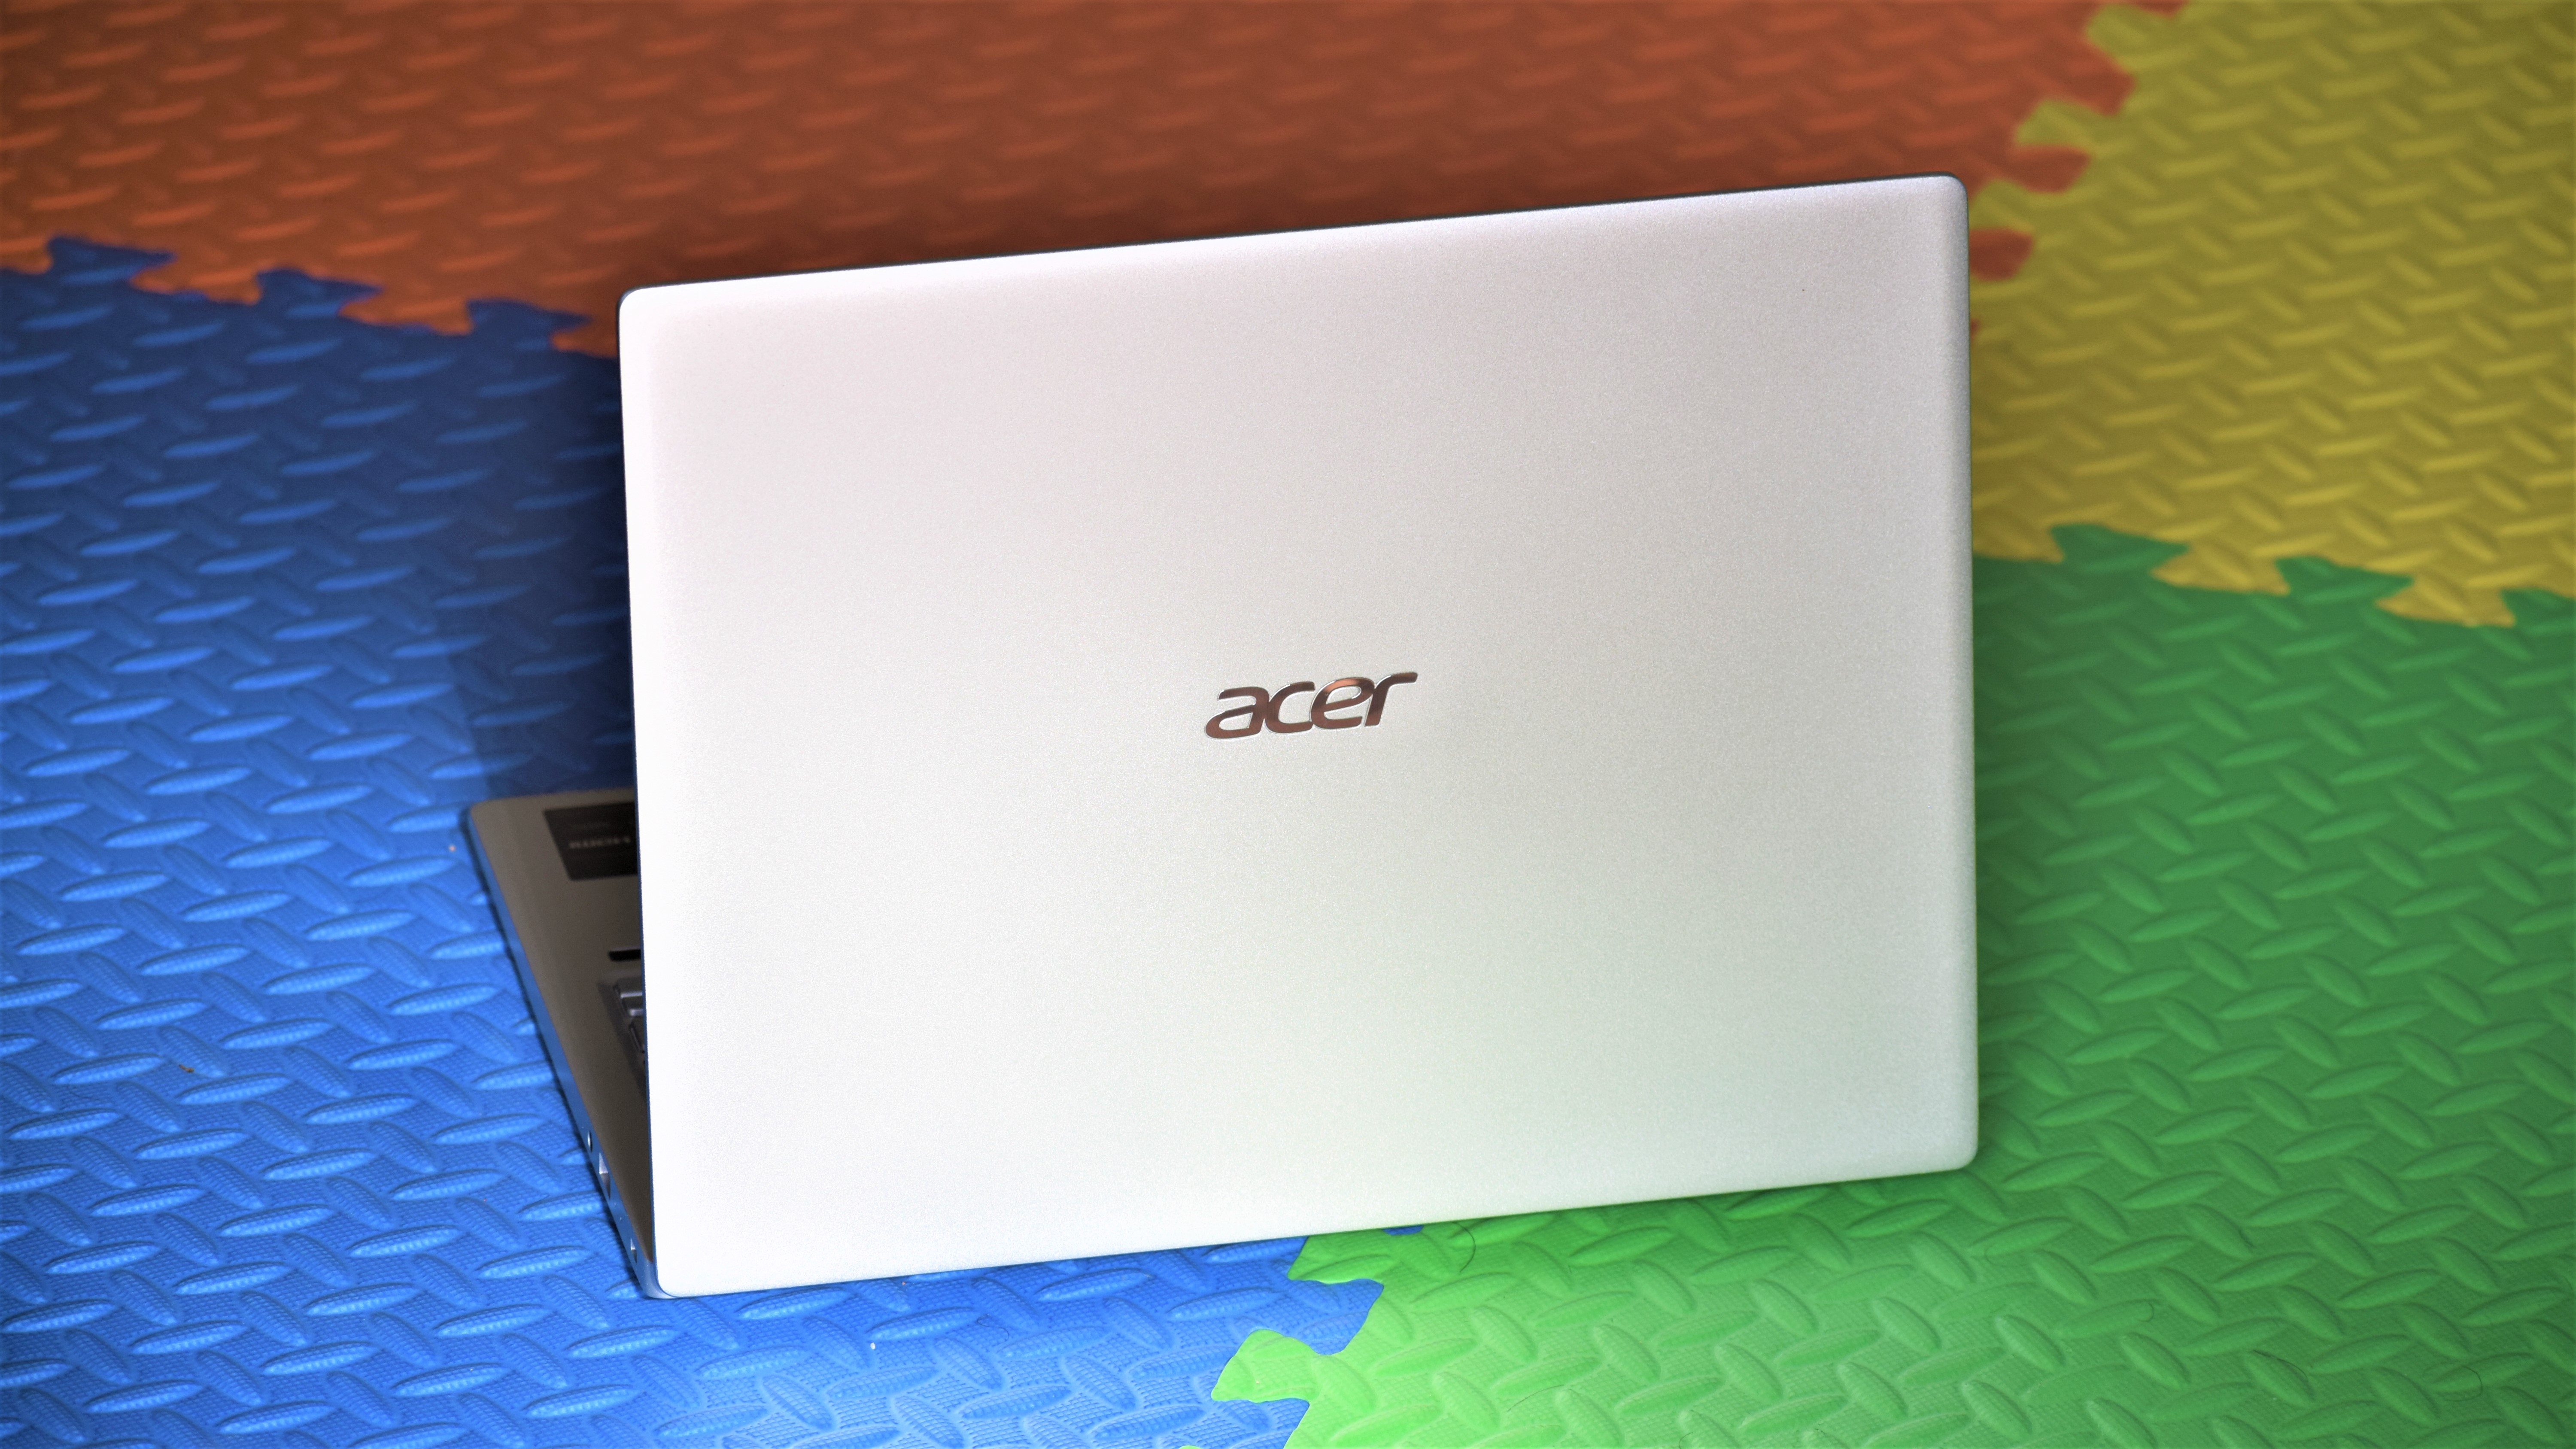 Acer Swift 3 SF313-53